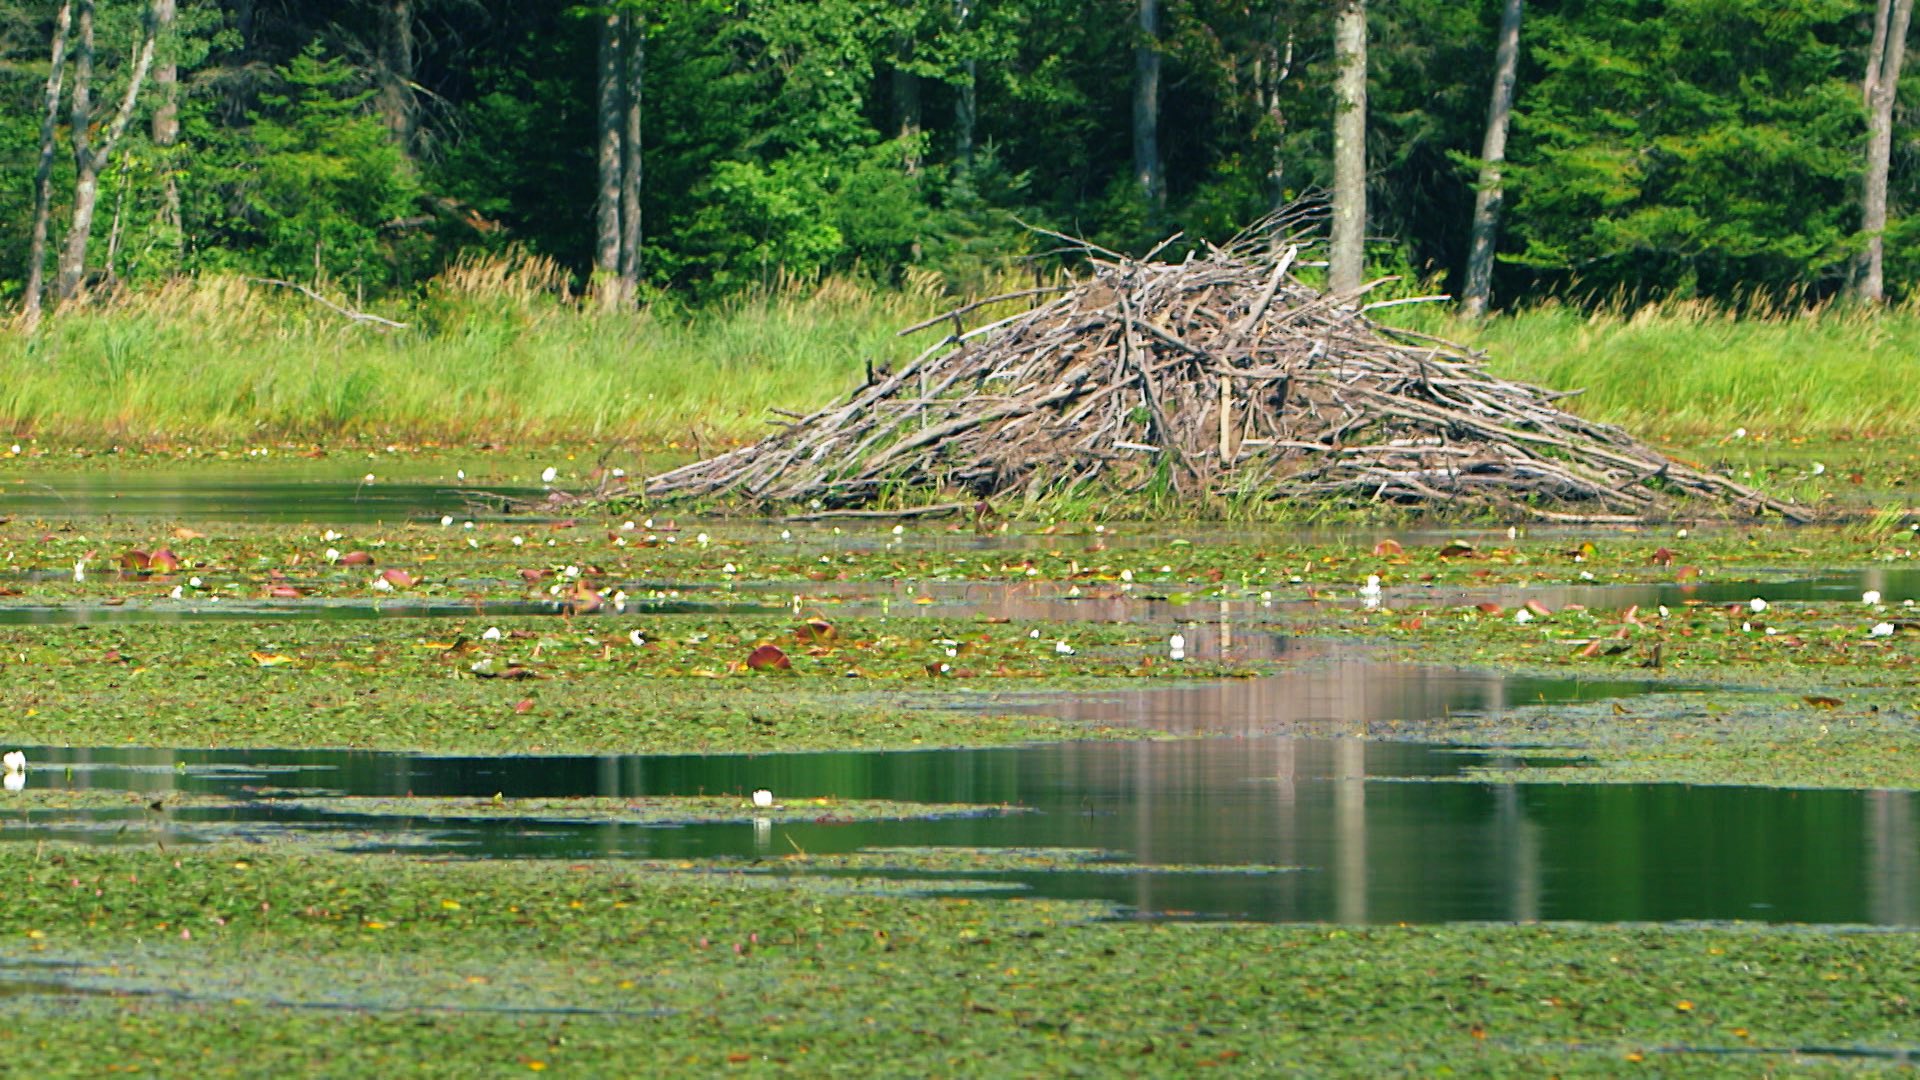 世界遺産 カナダのウッドバッファロー国立公園 こちらのビーバーはポプラの木を齧り倒して運び 水辺にダムや巣 を作ります なんと世界最大のビーバーダムもここにあります どれだけ大きいのか 2月21日 日 午後6時の放送で紹介します 世界遺産